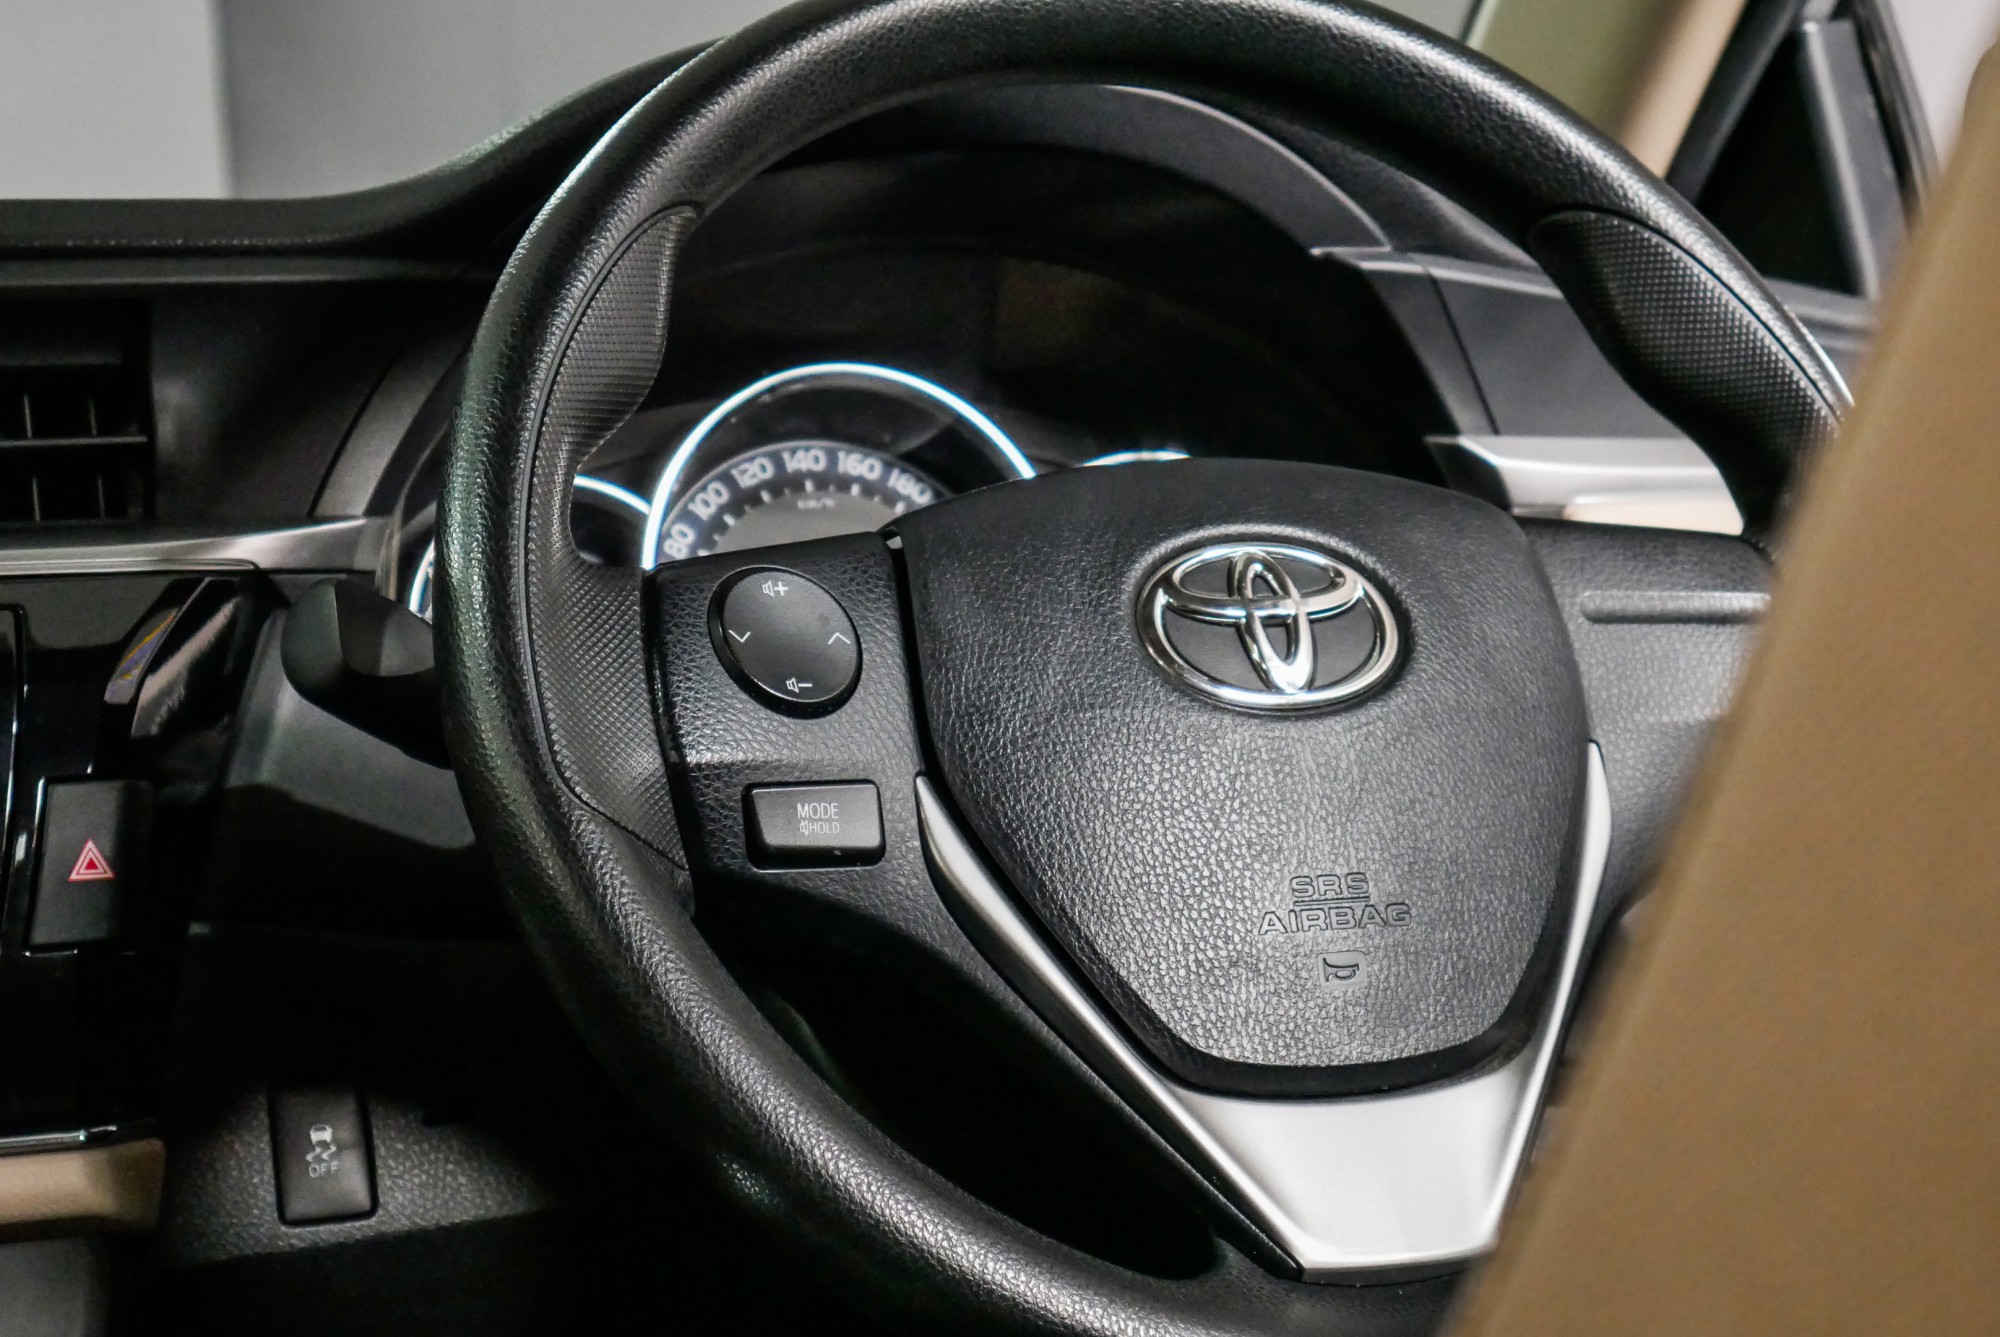 Toyota ALTIS 1.8 E ปี 2016 สีเงิน